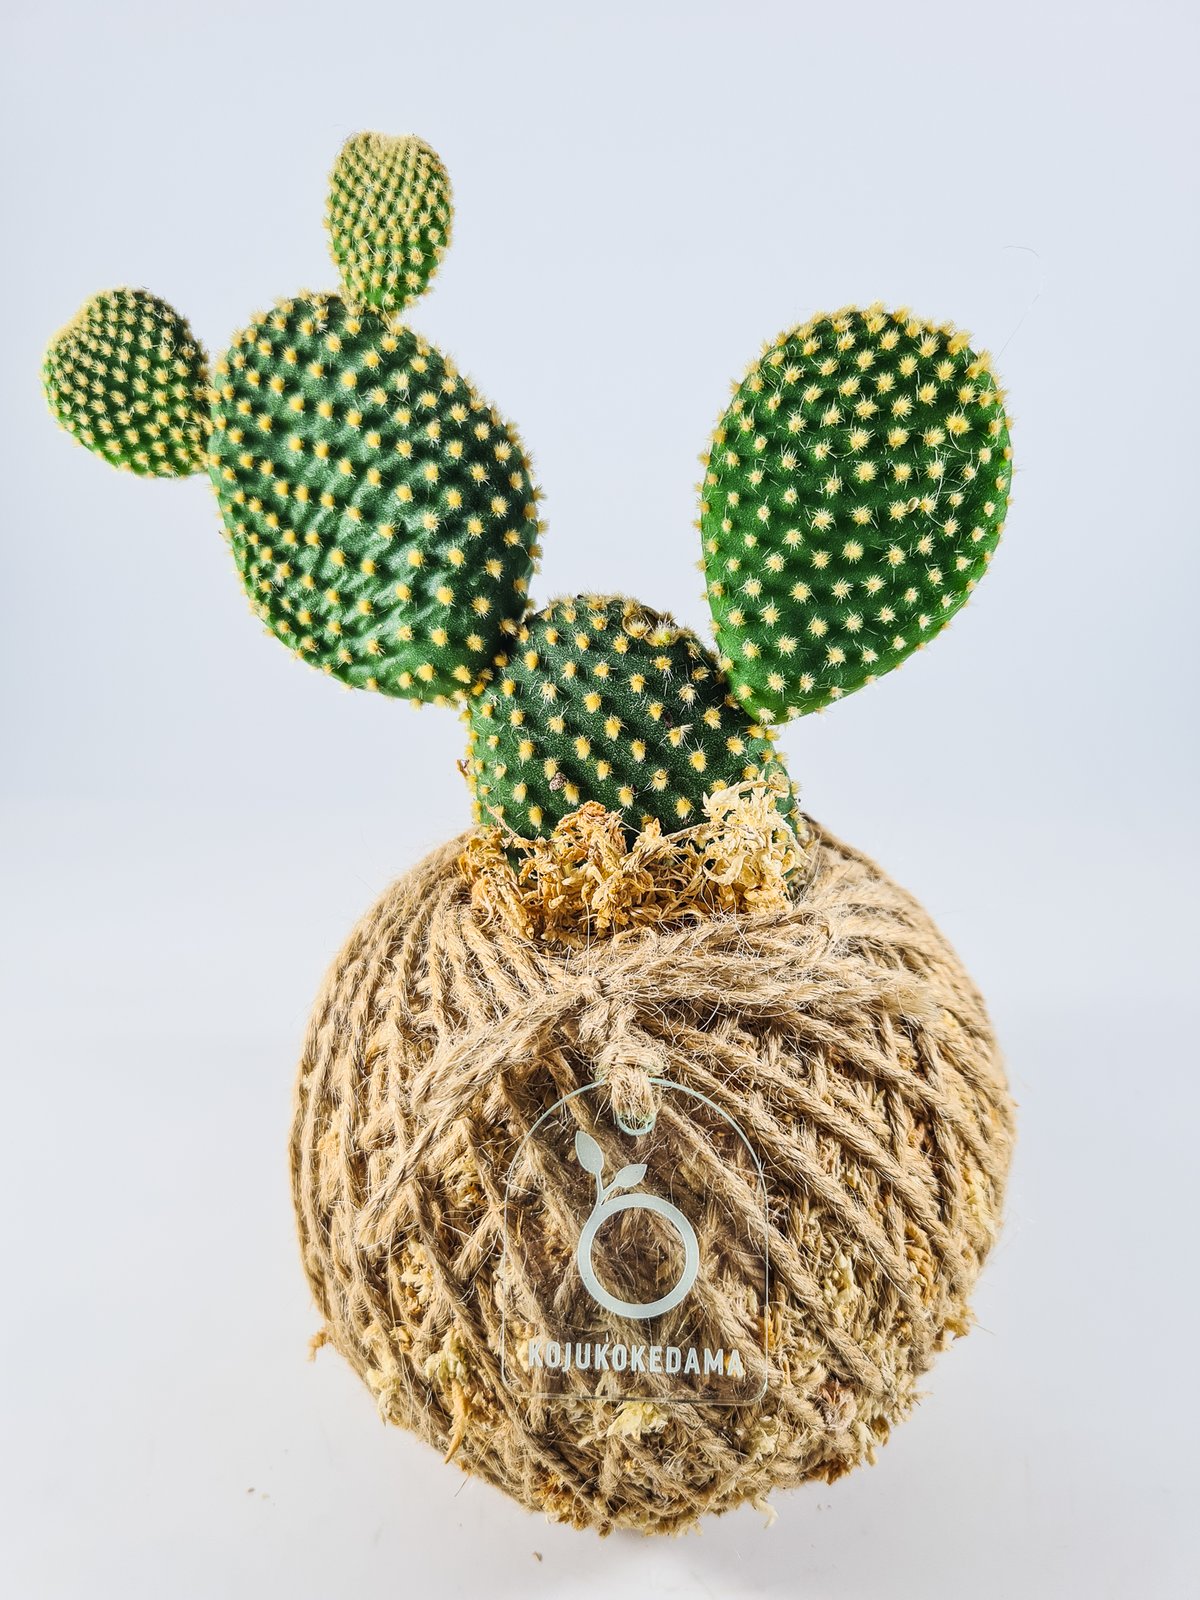 Image of Bunny Ears Cactus Kokedama